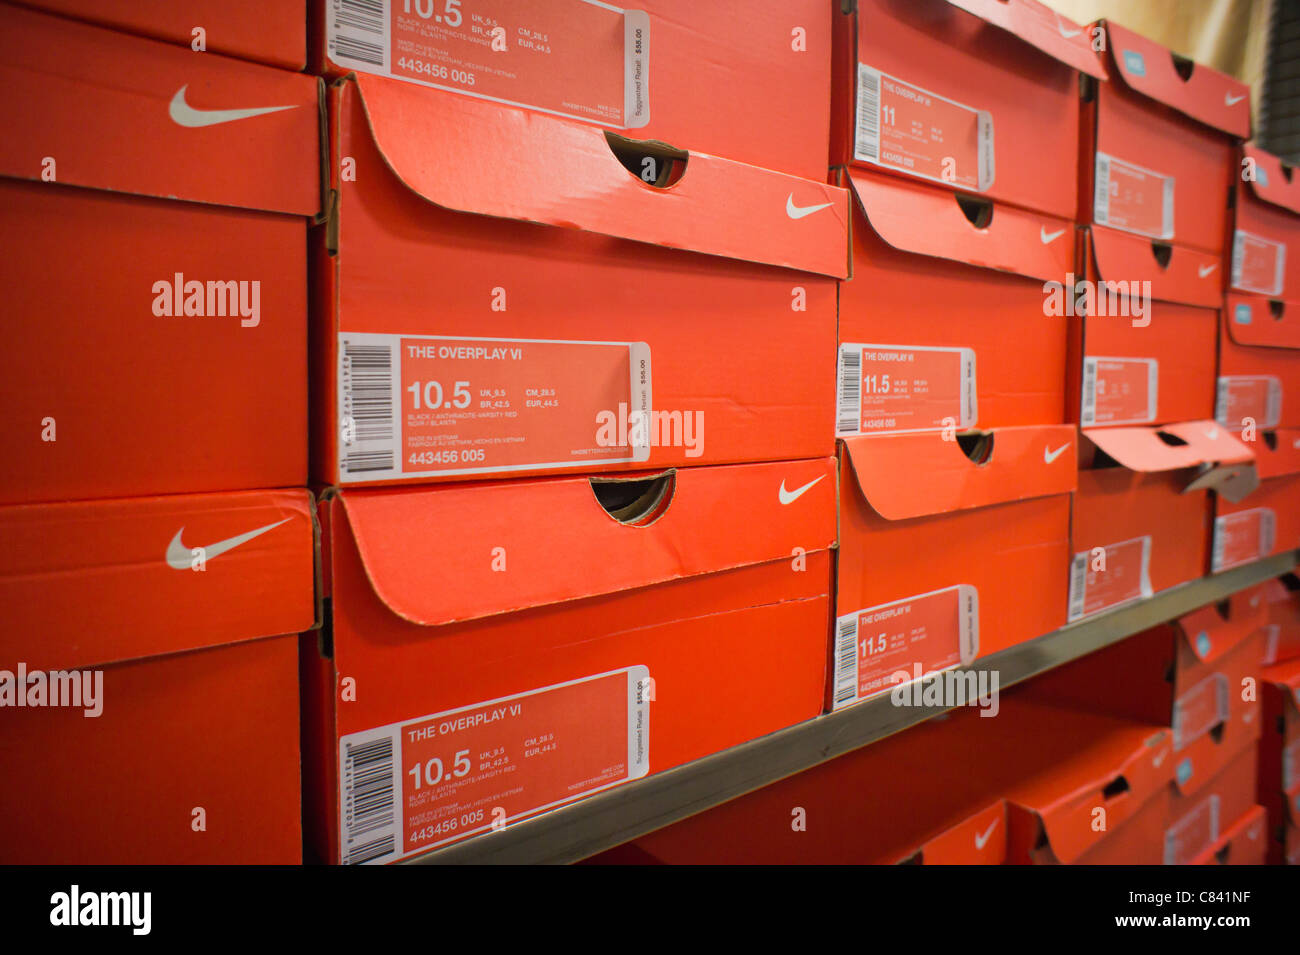 Cajas de calzado deportivo Nike son vistos en una tienda de artículos  deportivos en Nueva York Fotografía de stock - Alamy